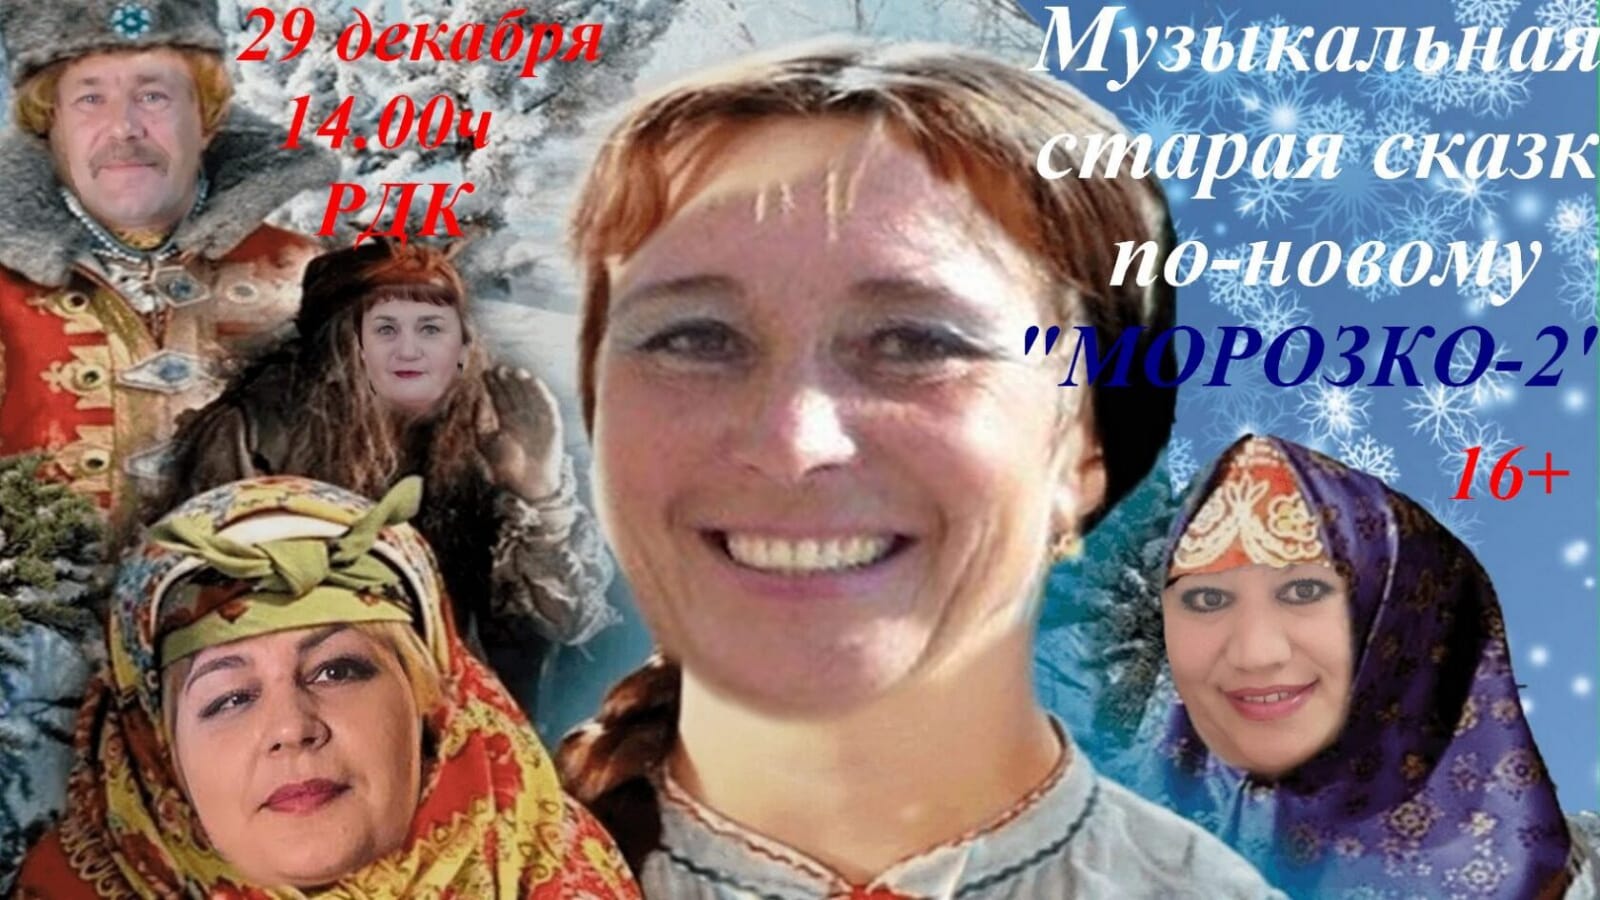 Макушинский Районный Дом культуры приглашает 29 декабря в 14:00 на новогоднее представление - Музыкальная старая сказка по новому &quot; Морозко-2&quot;.